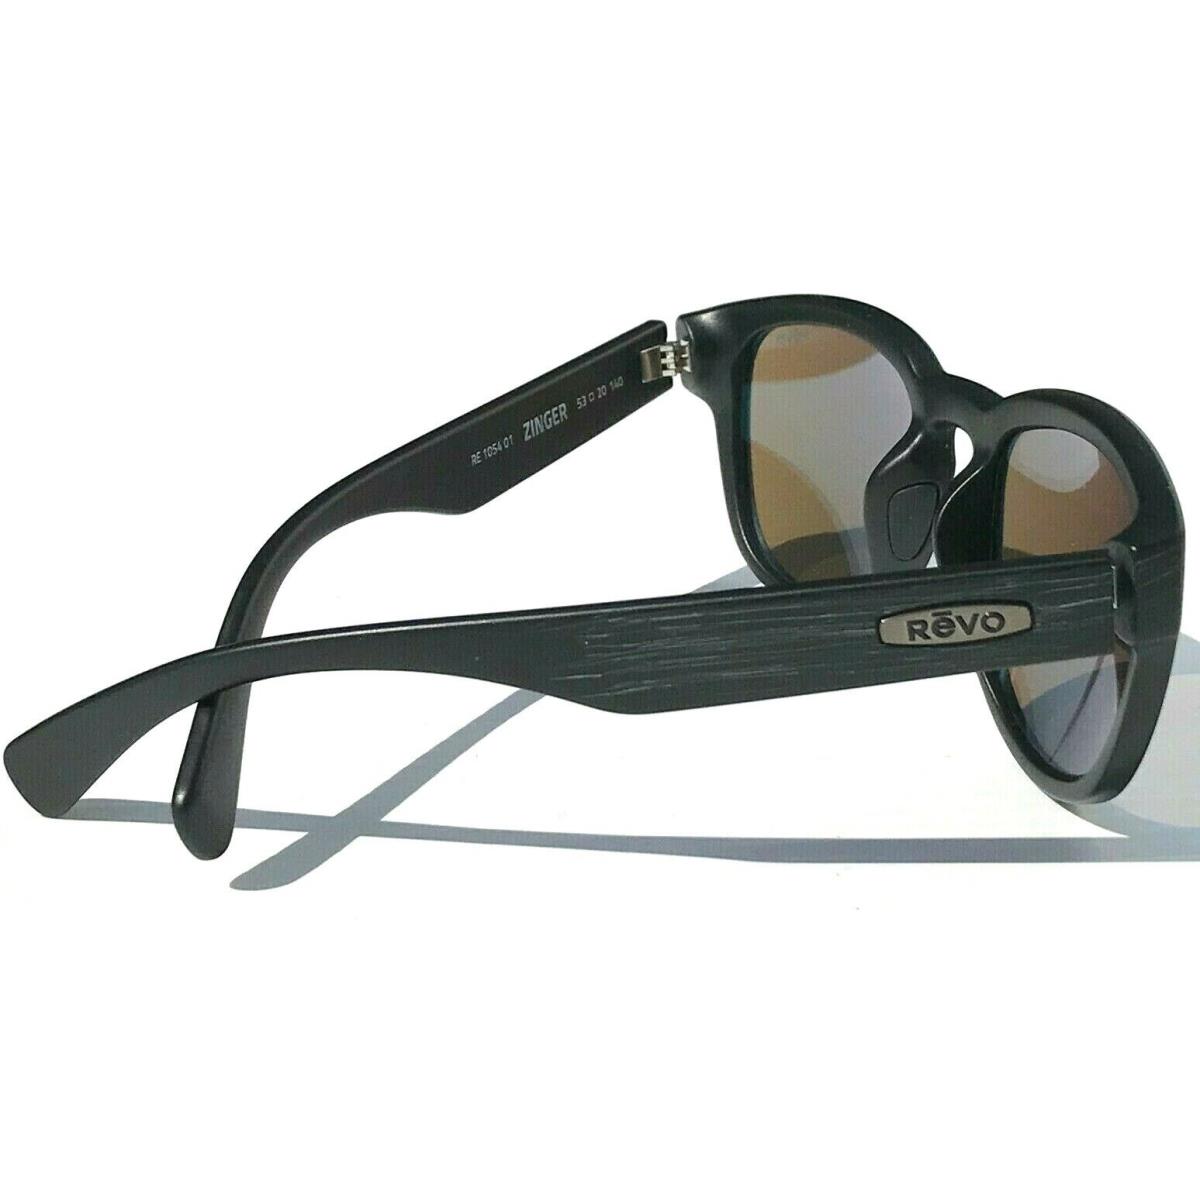 Revo sunglasses Zinger - Black Frame, Gray Lens